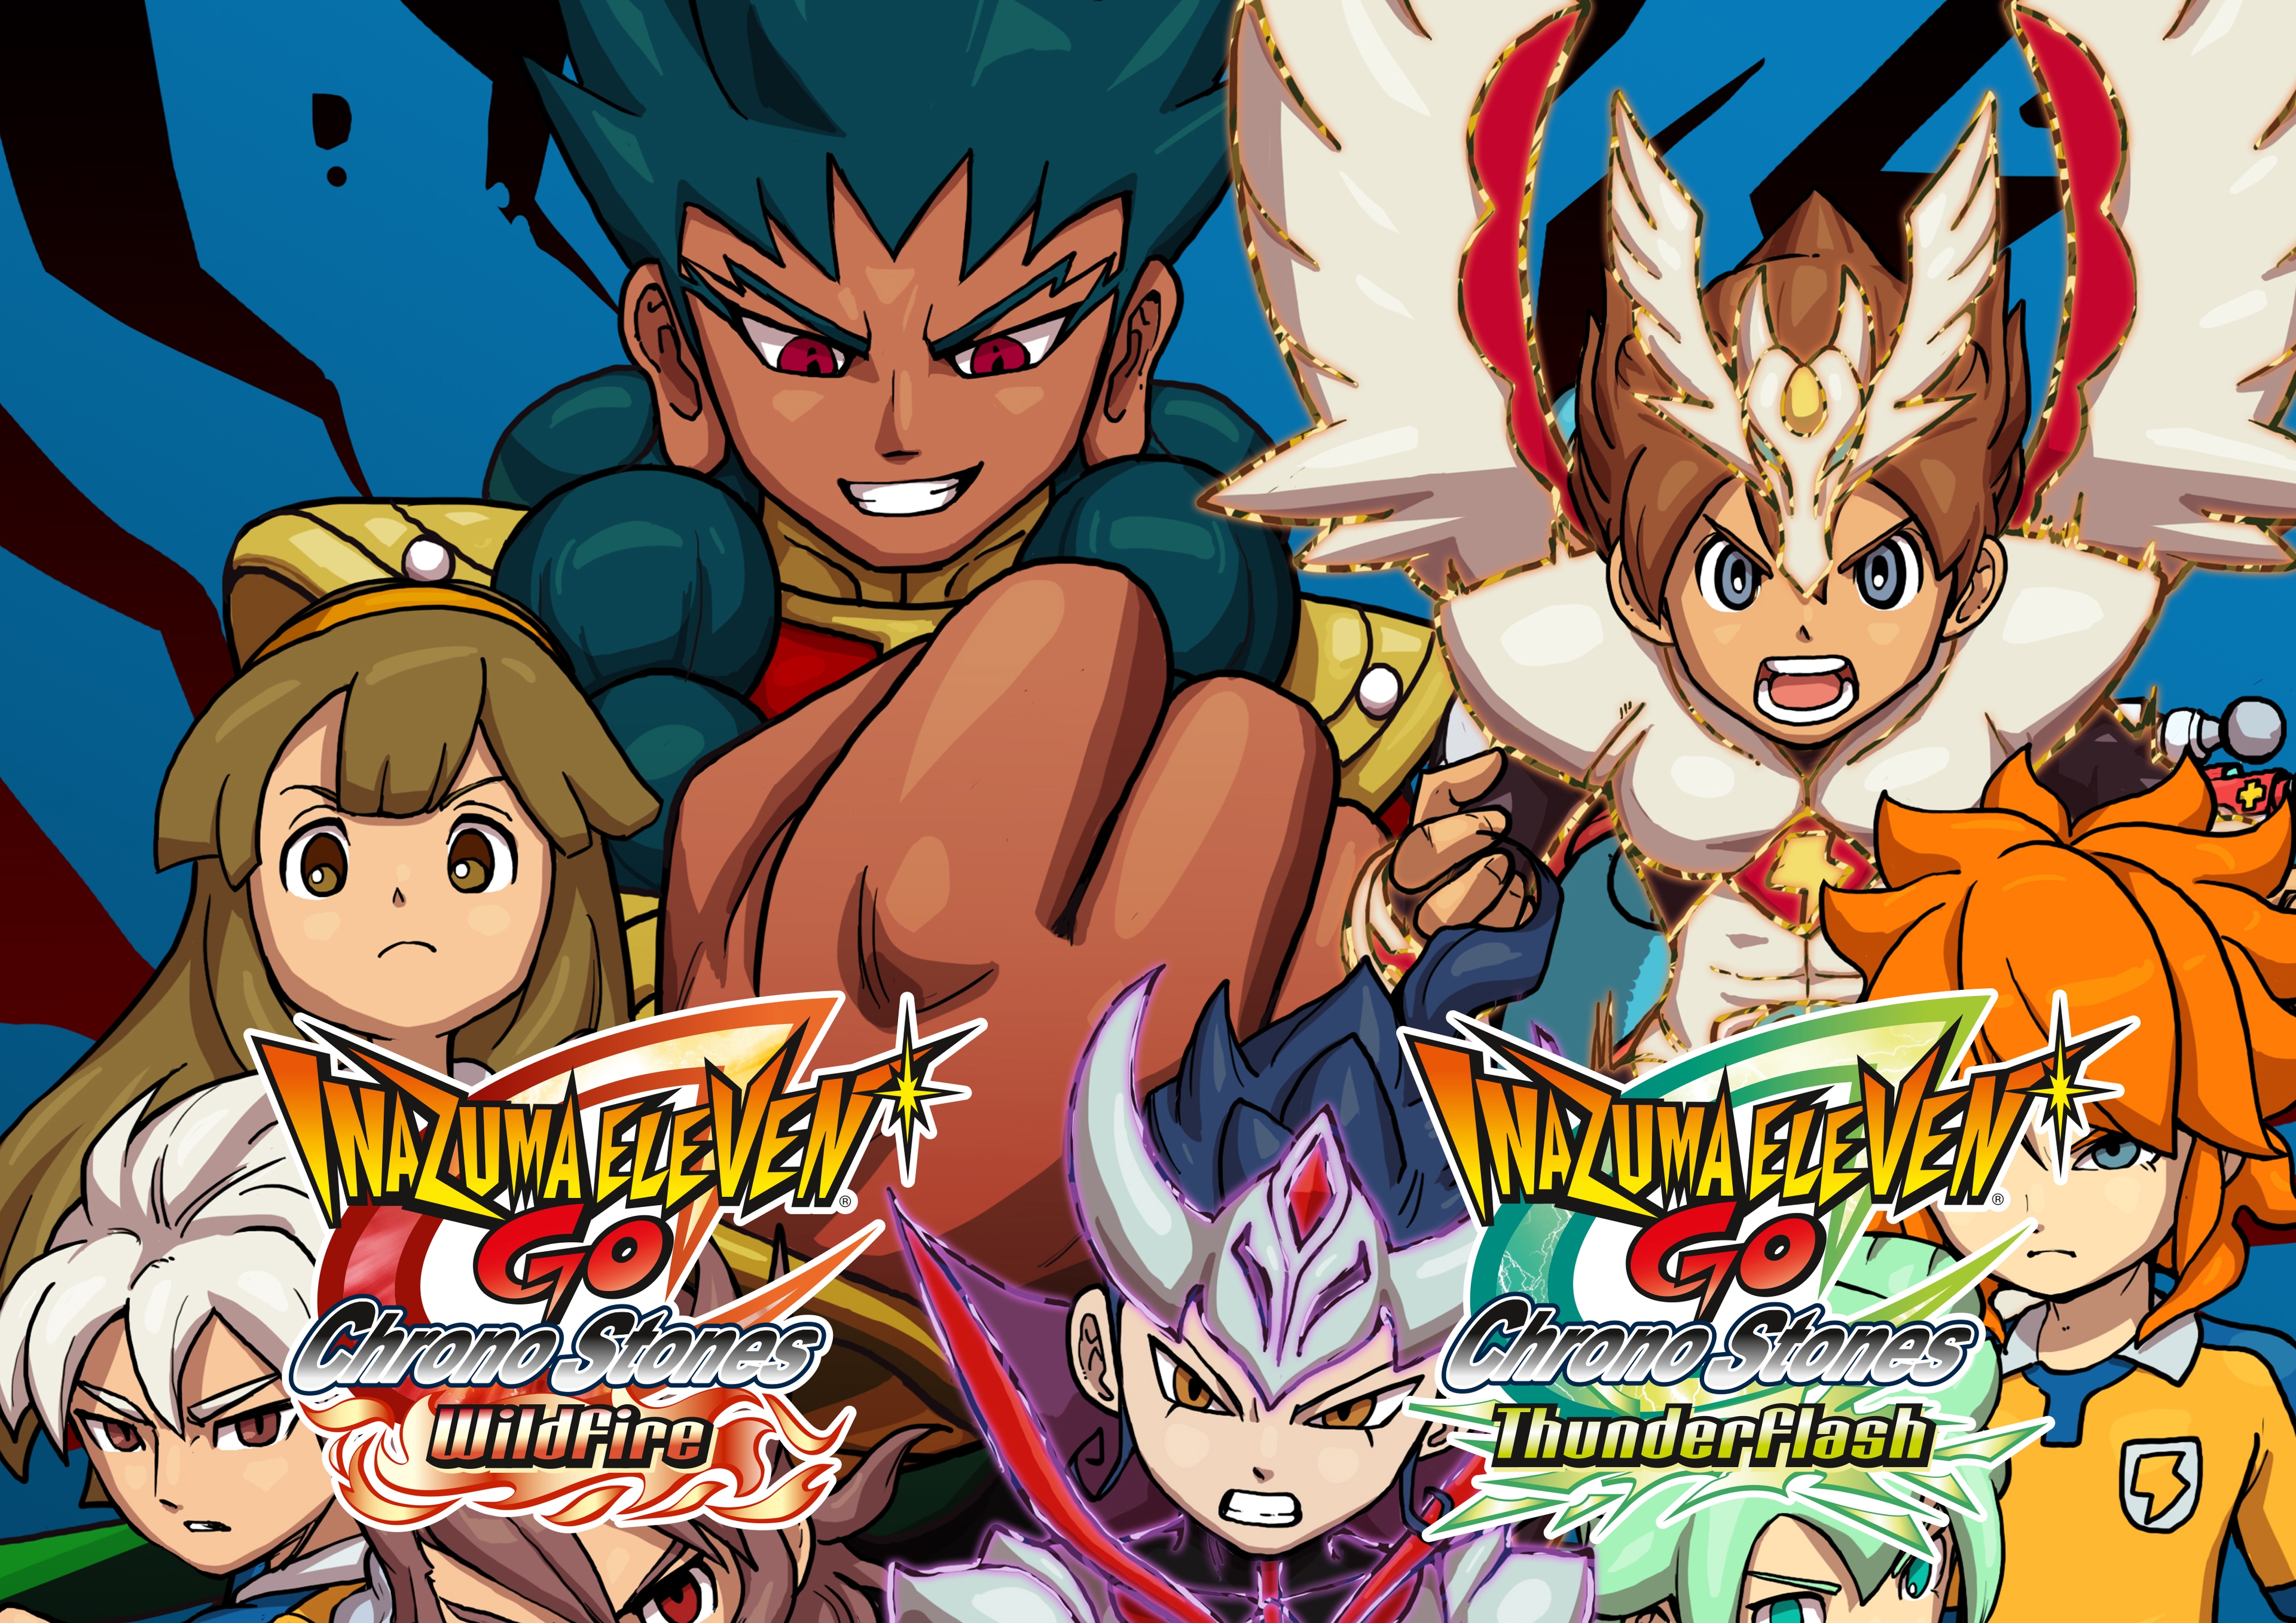 Análise: Inazuma Eleven GO Chrono Stones: Wildfire e Thunderflash